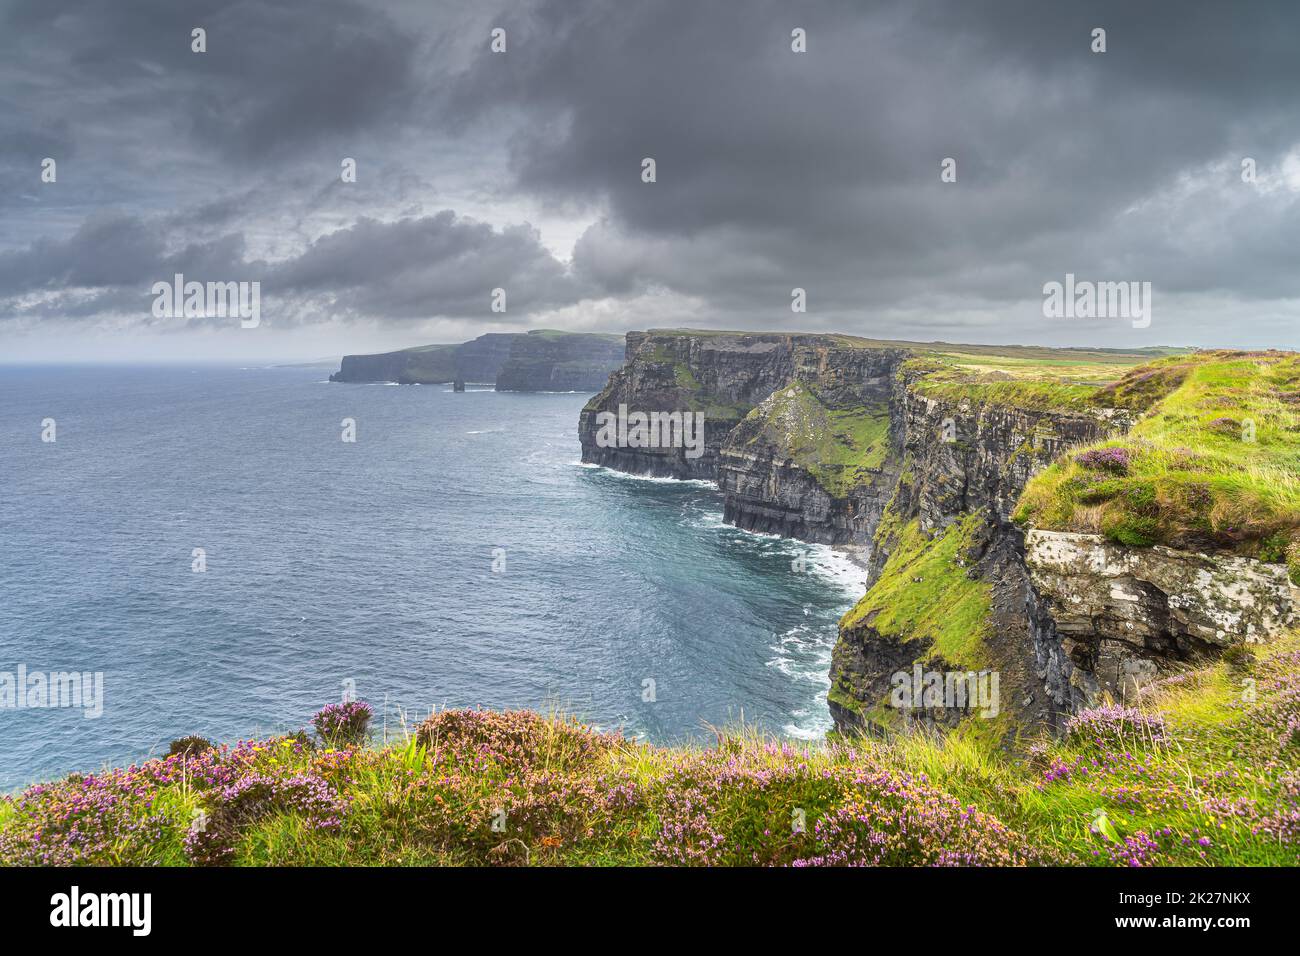 Ciel sombre et spectaculaire au-dessus des falaises emblématiques de Moher, en Irlande Banque D'Images